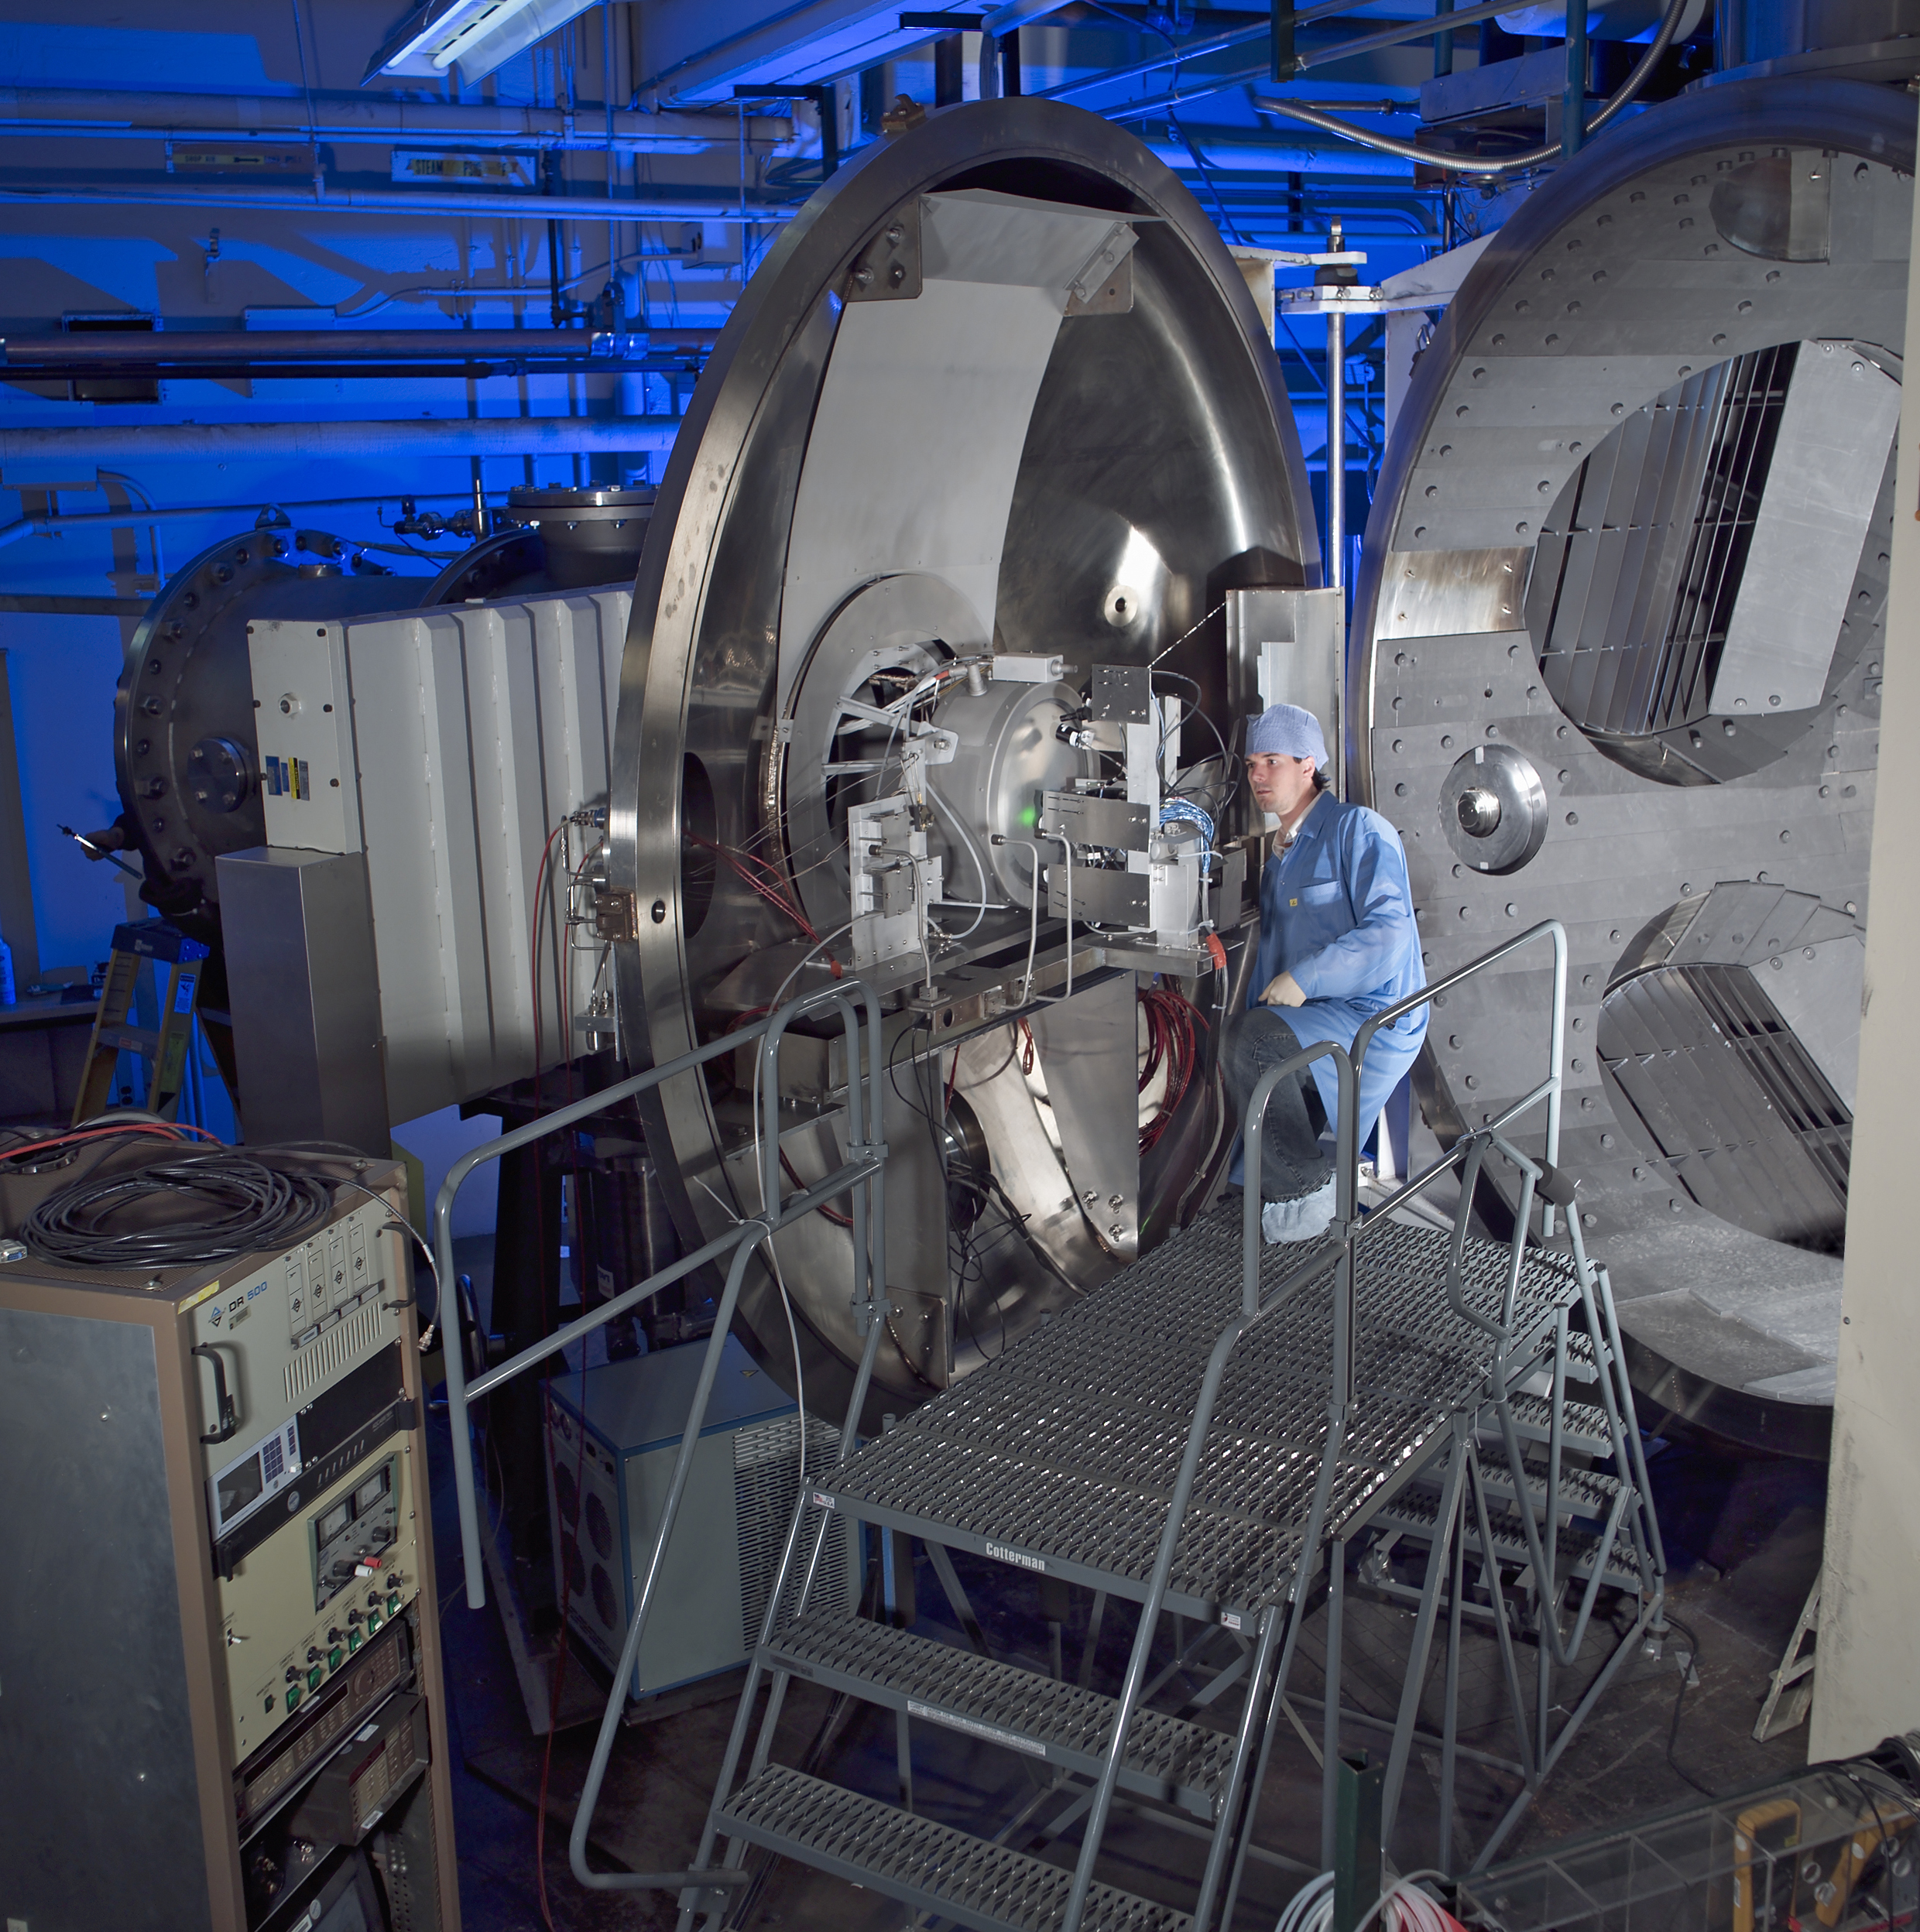 Dveře vakuové komory s nově vyvíjeným iontovým motorem NEXT se zavřely v roce 2005 a až do letošního roku 2013 probíhal jeho dlouhodobý test (zdroj NASA).